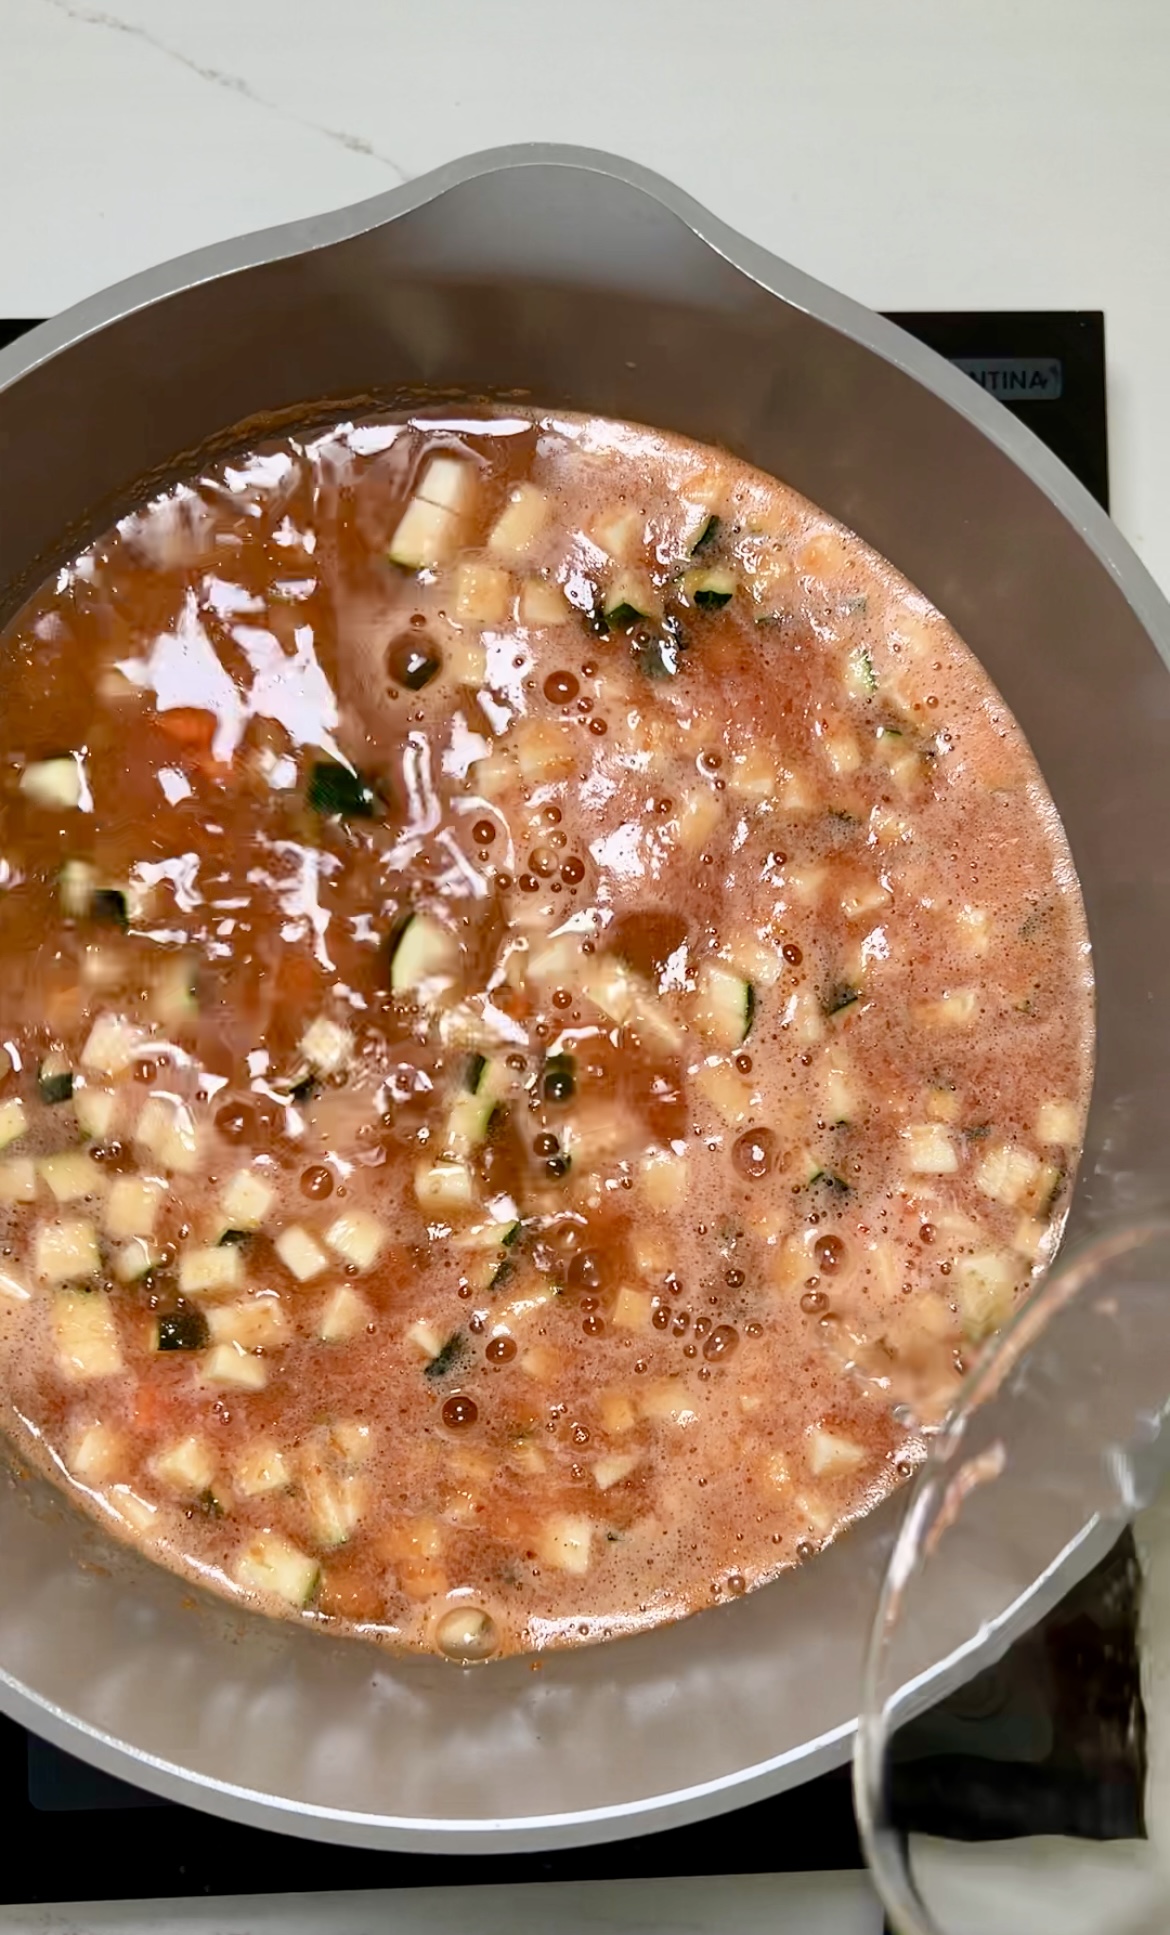 Una sartén llena de sopa de lentejas hirviendo a fuego lento sobre una estufa, repleta de sabrosos chiles chipotles y una variedad de vegetales frescos.